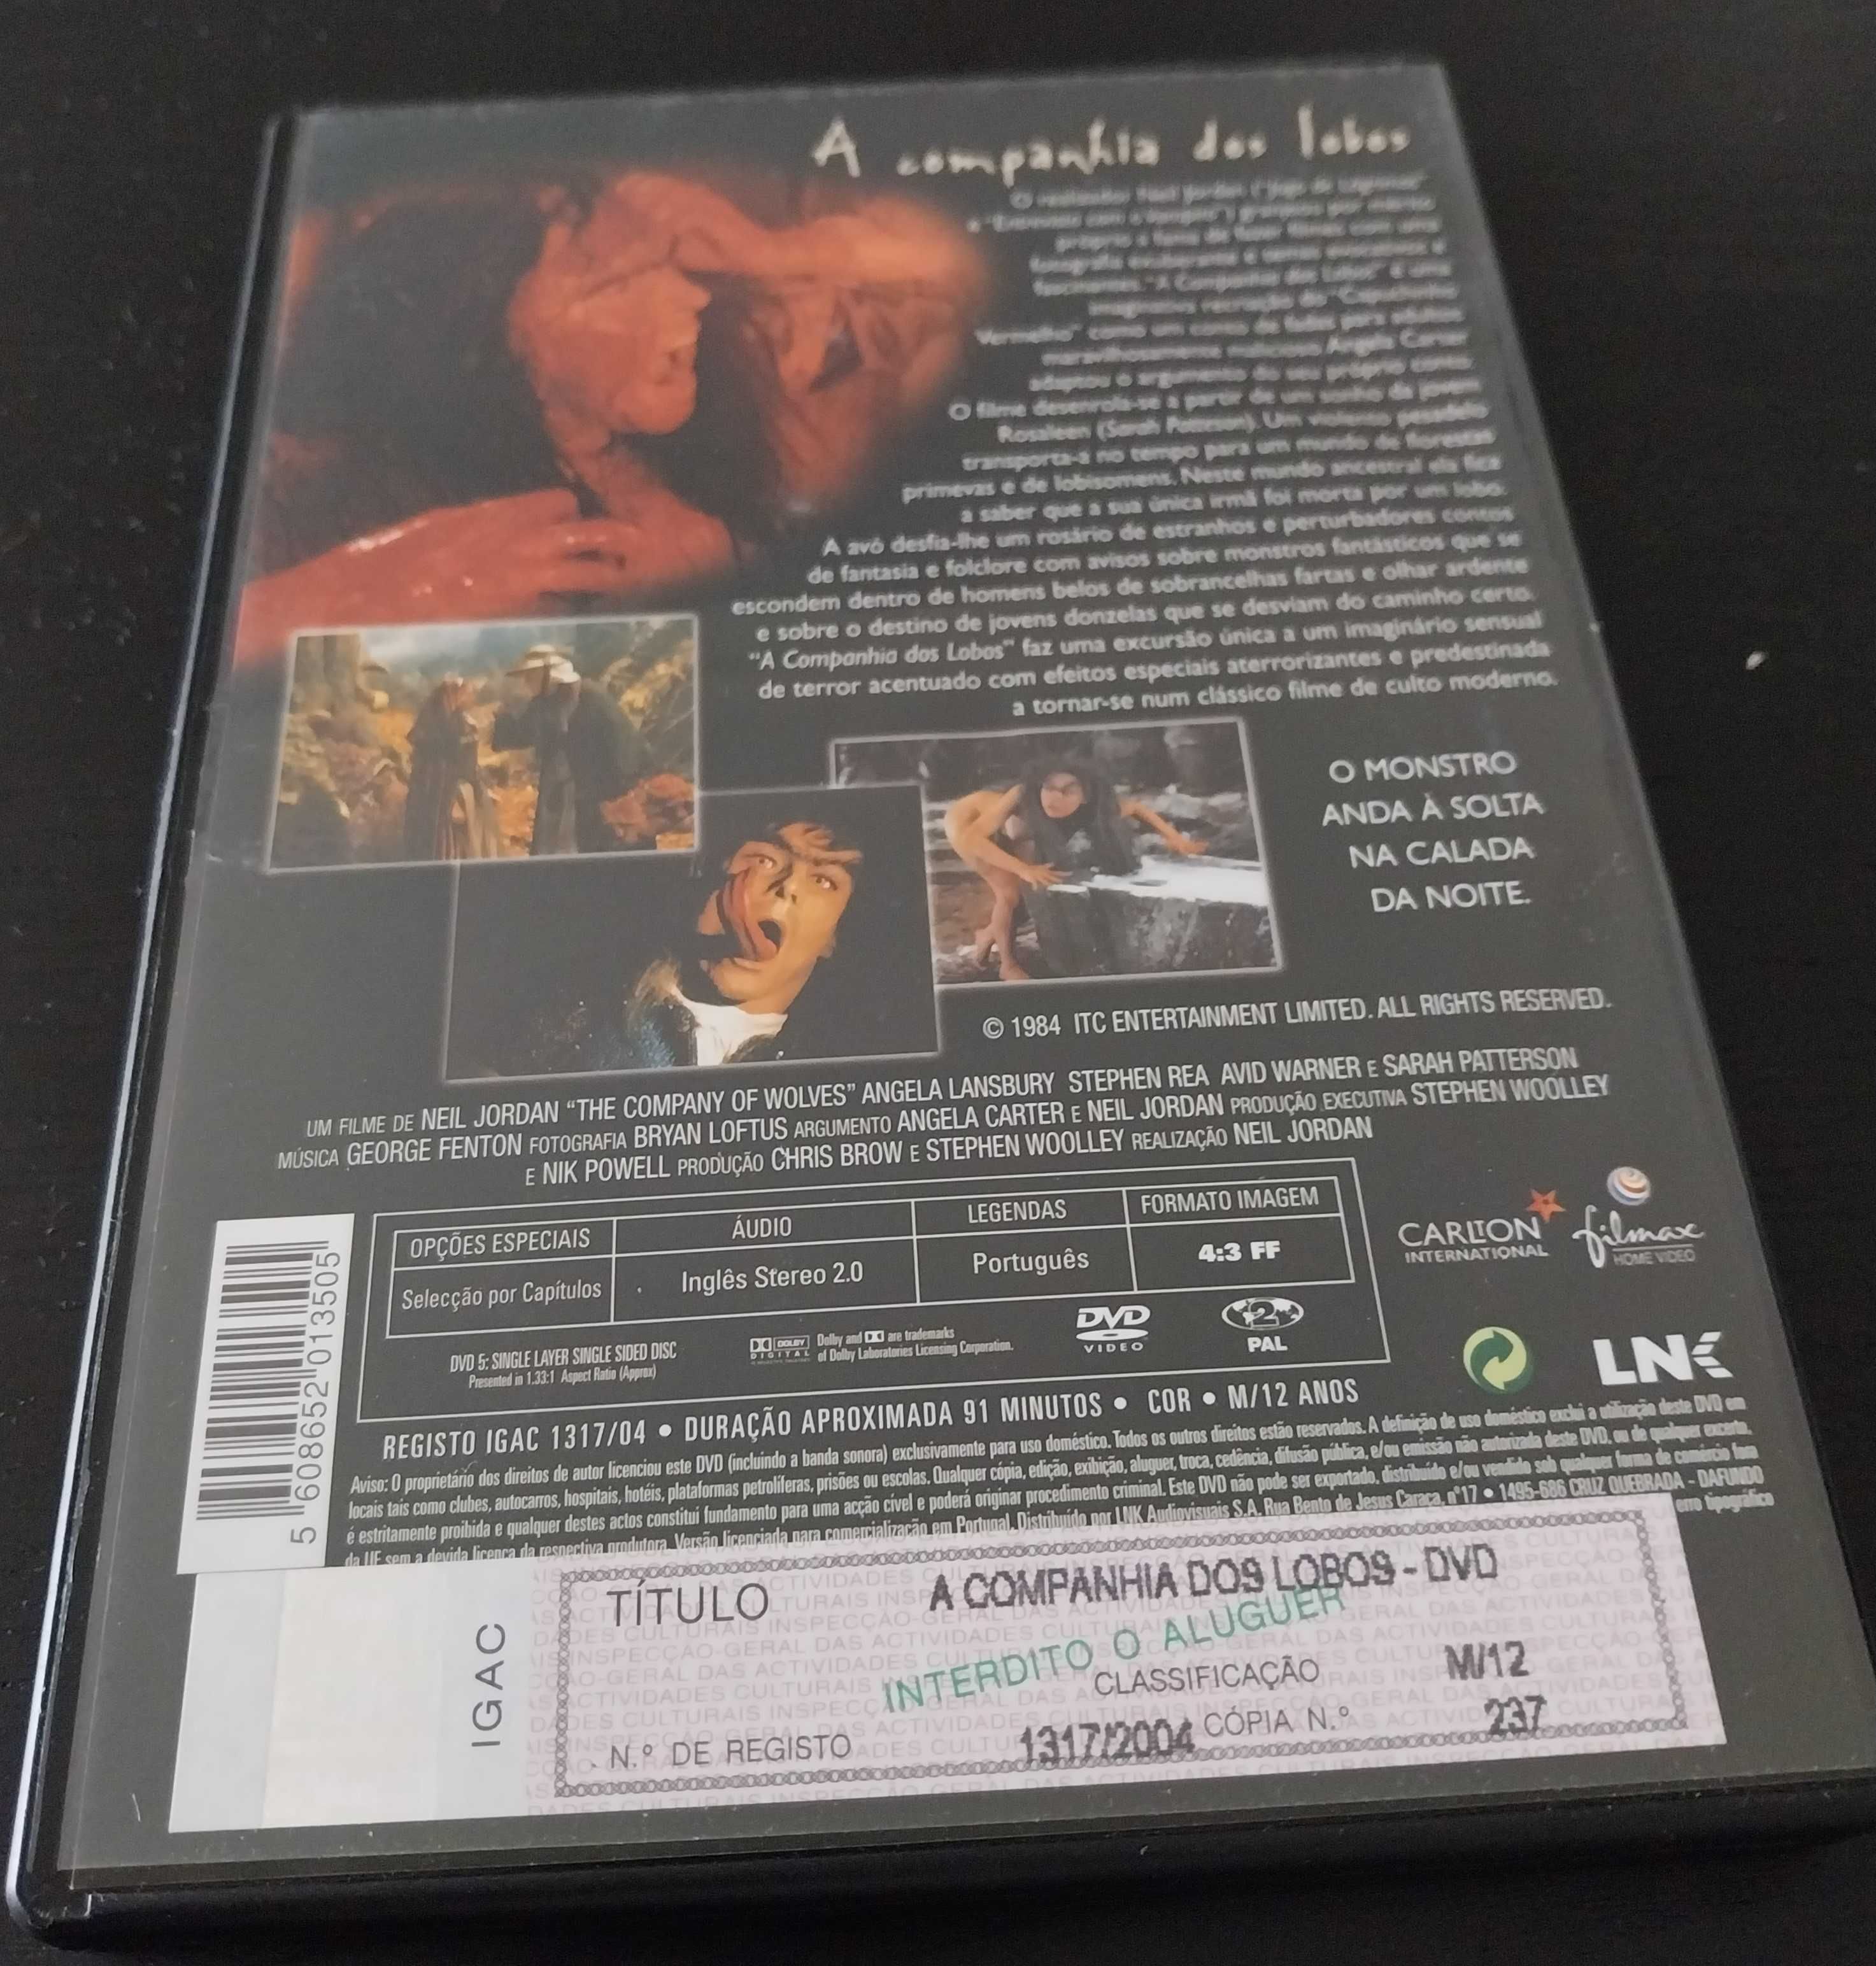 DVD “A companhia dos lobos”, de Neil Jordan